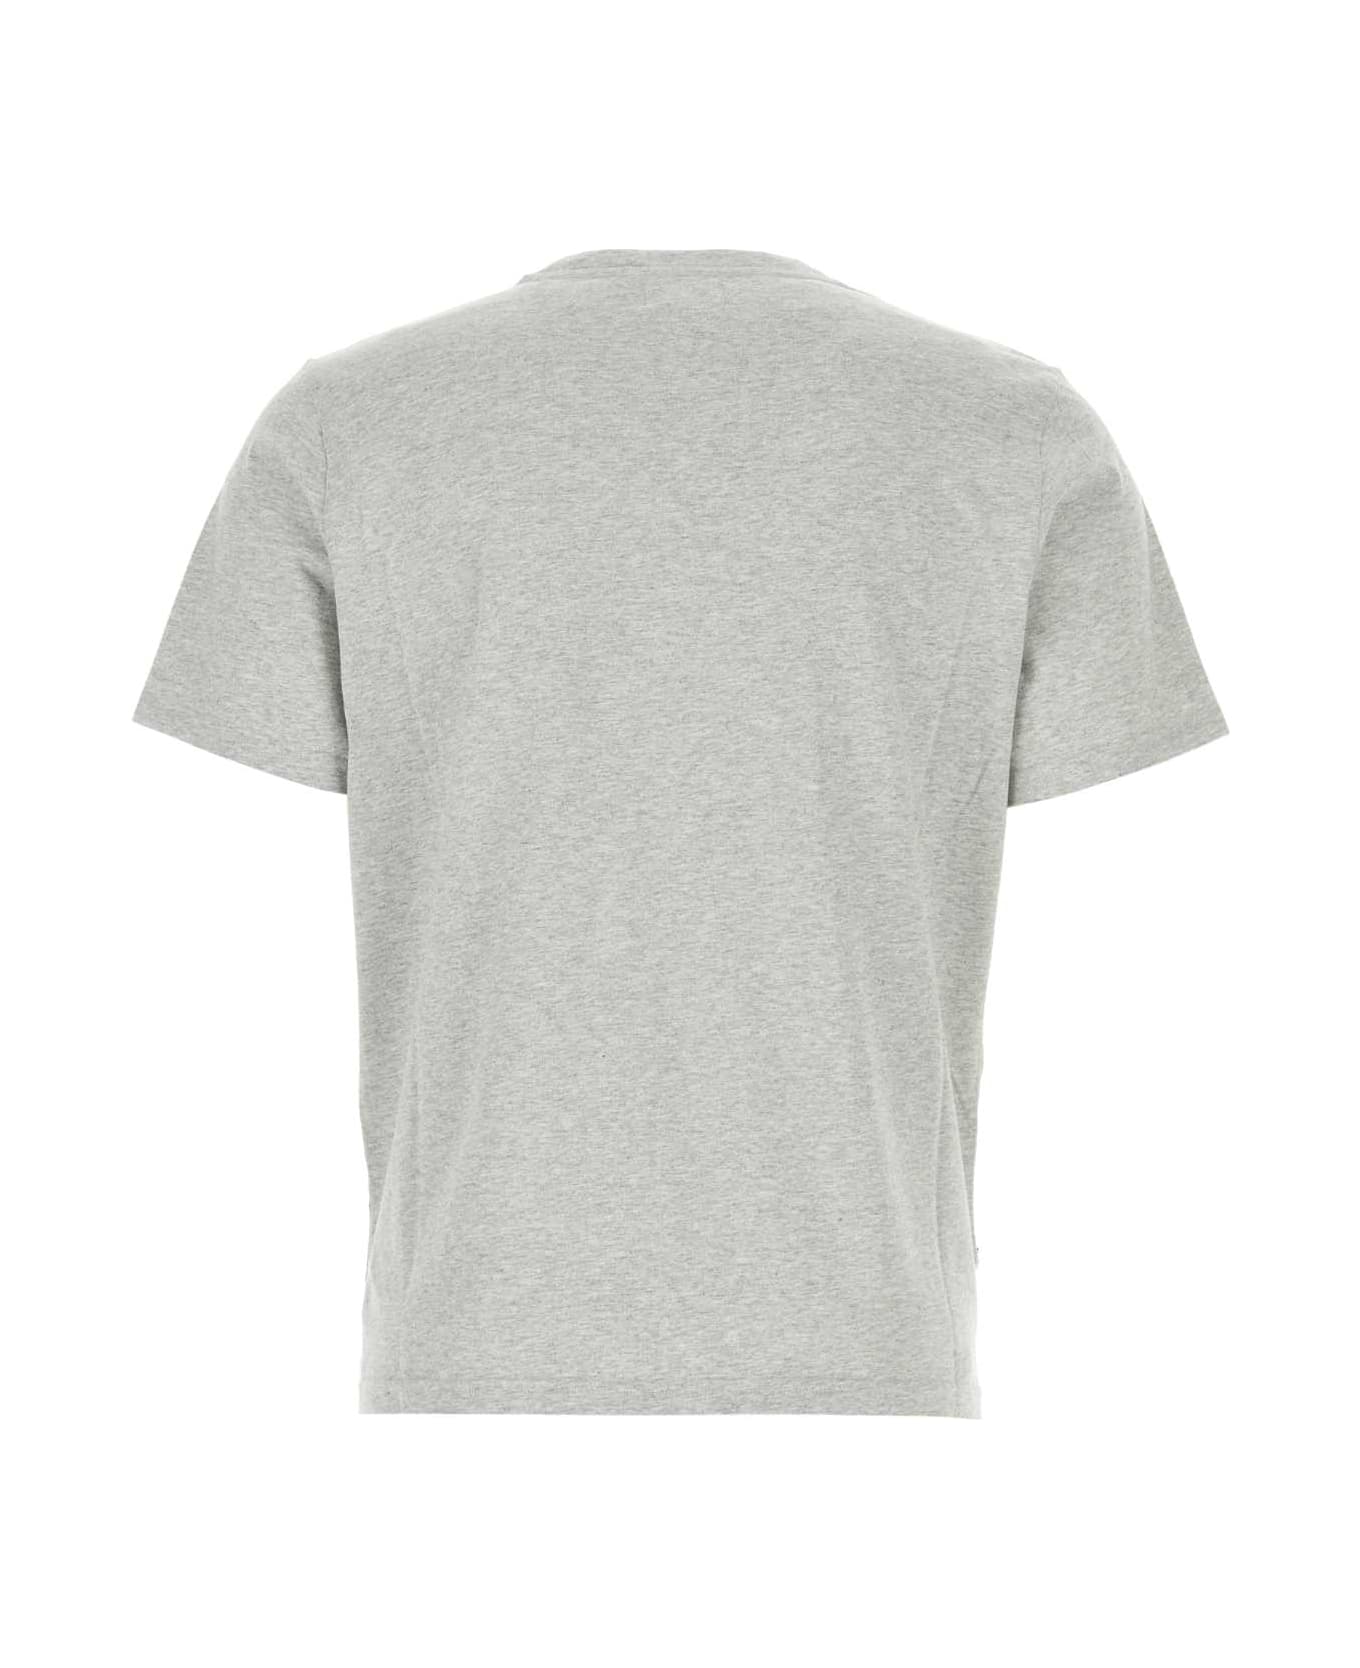 Autry Melange Grey Cotton T-shirt - 502M